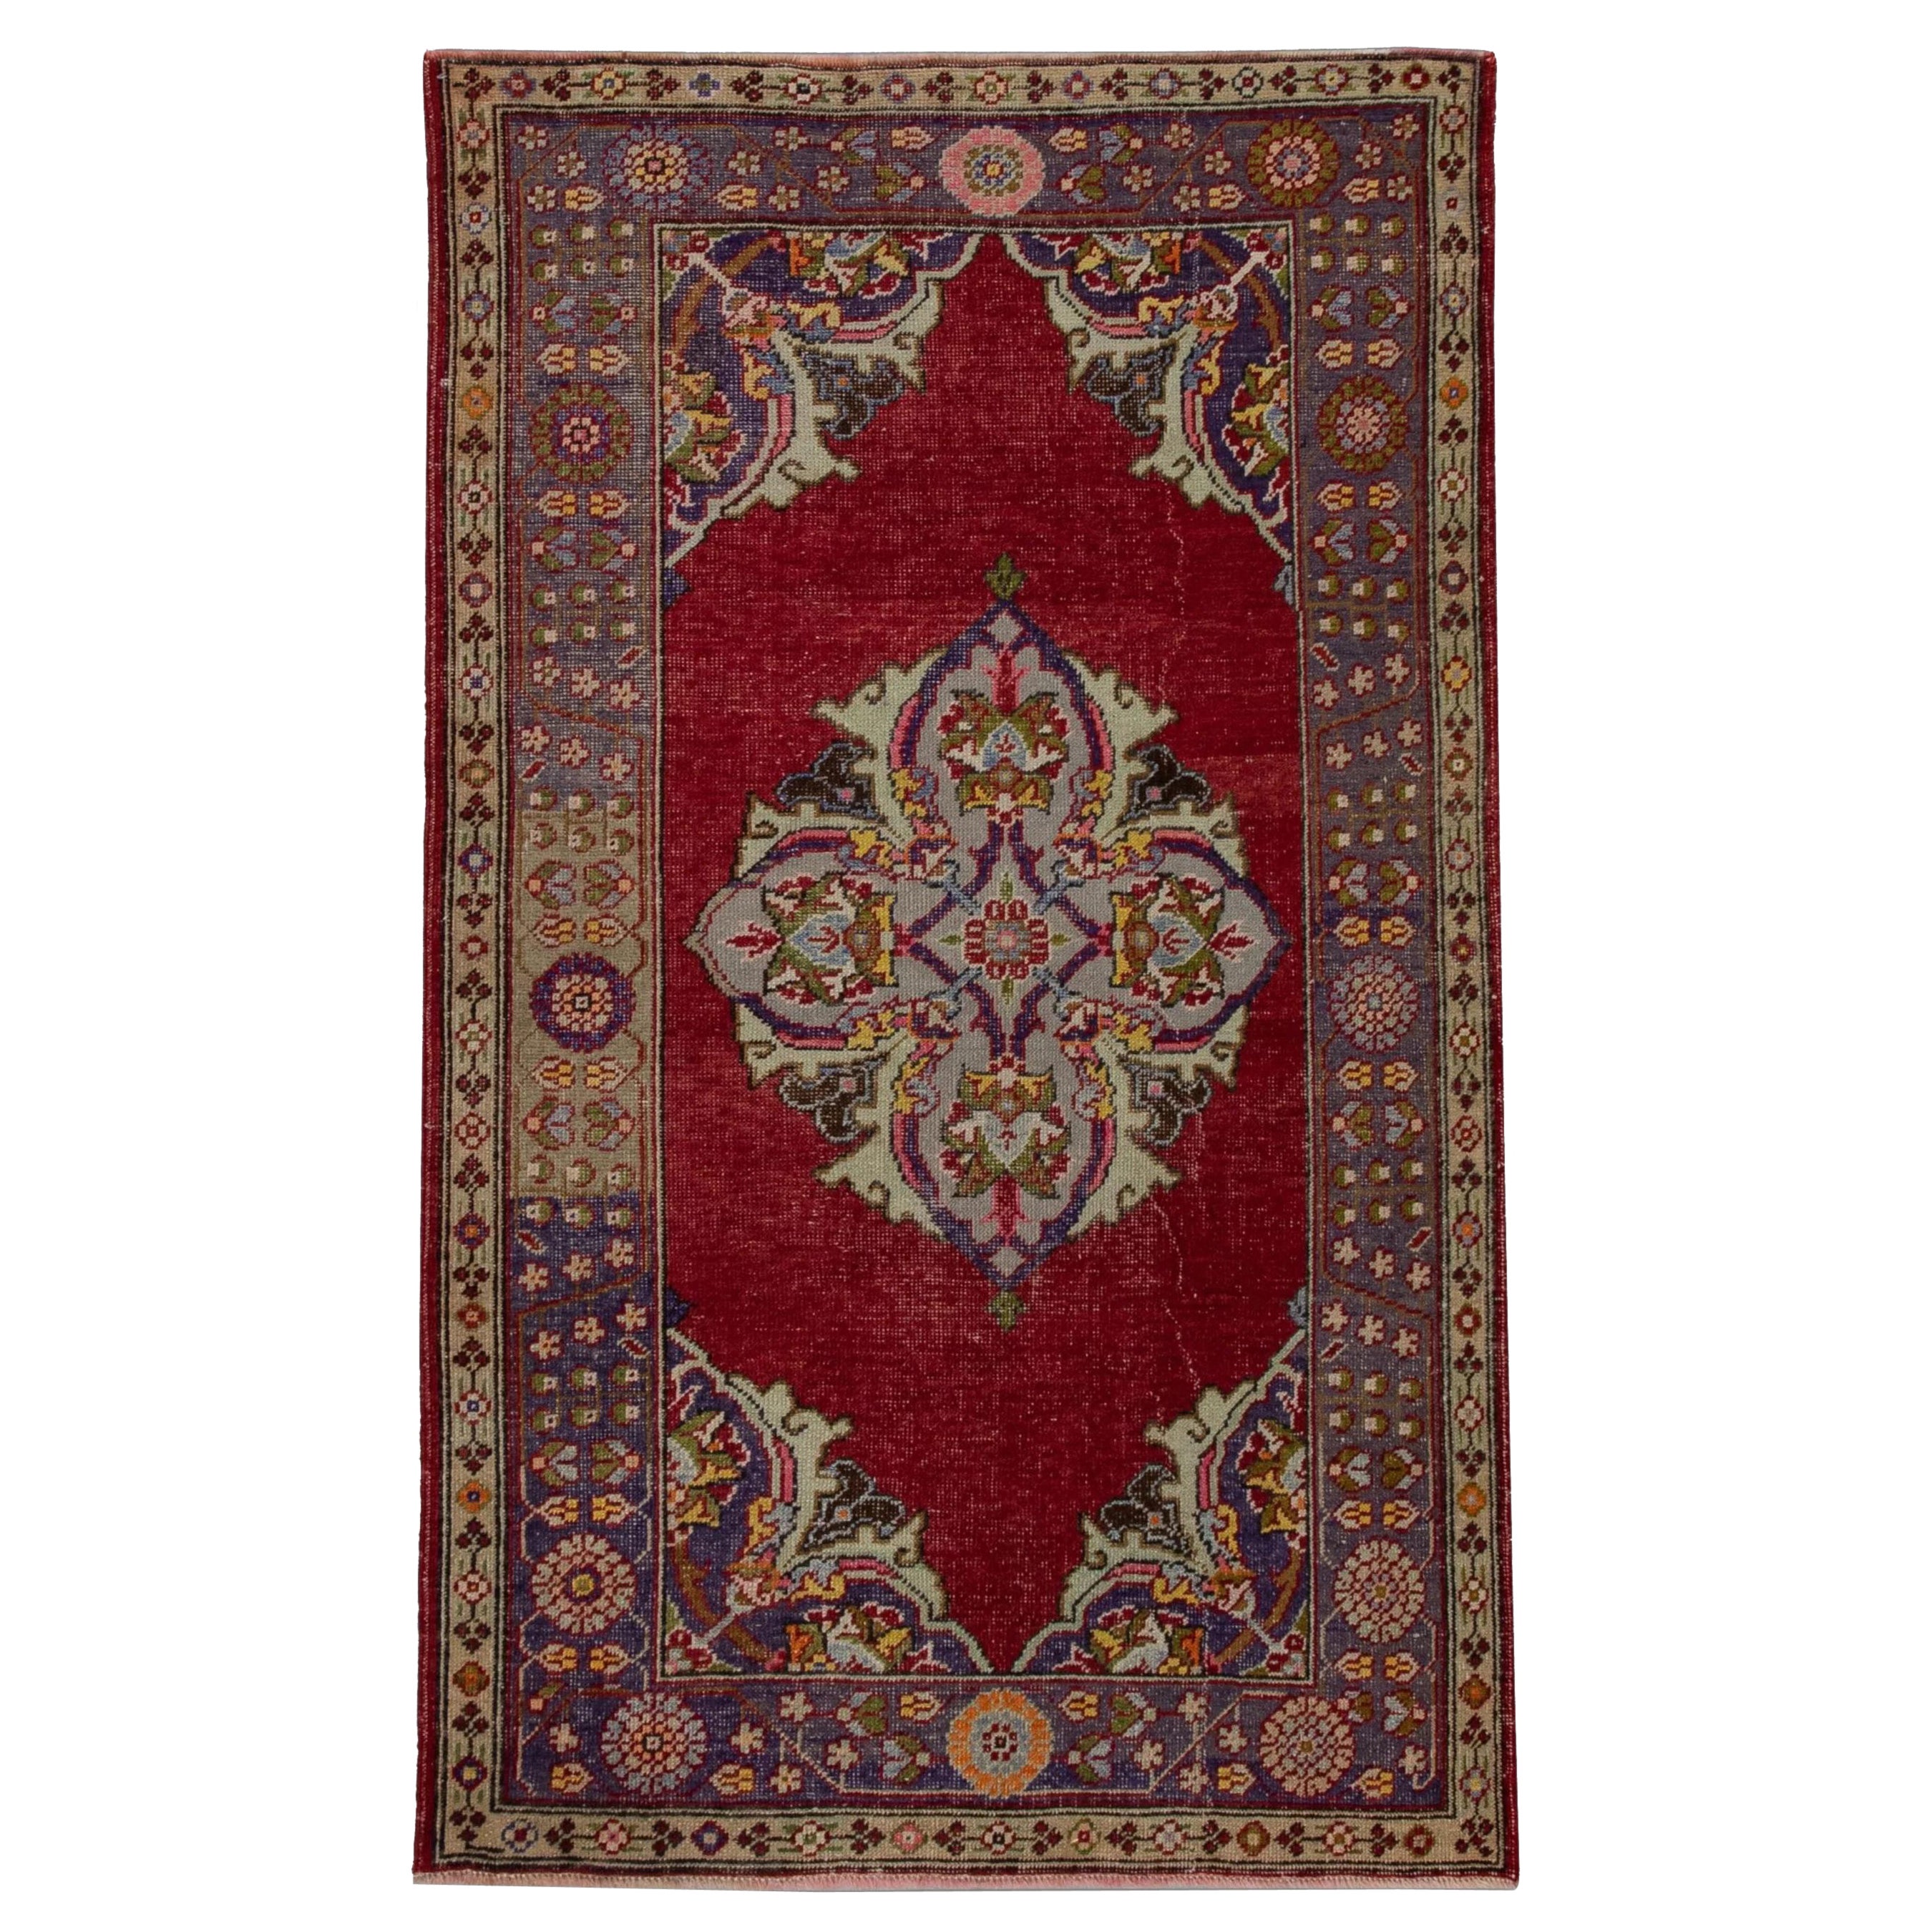 Türkischer Oushak-Teppich aus handgewebter Wolle in Rot, mehrfarbig, 4' x 6'6"